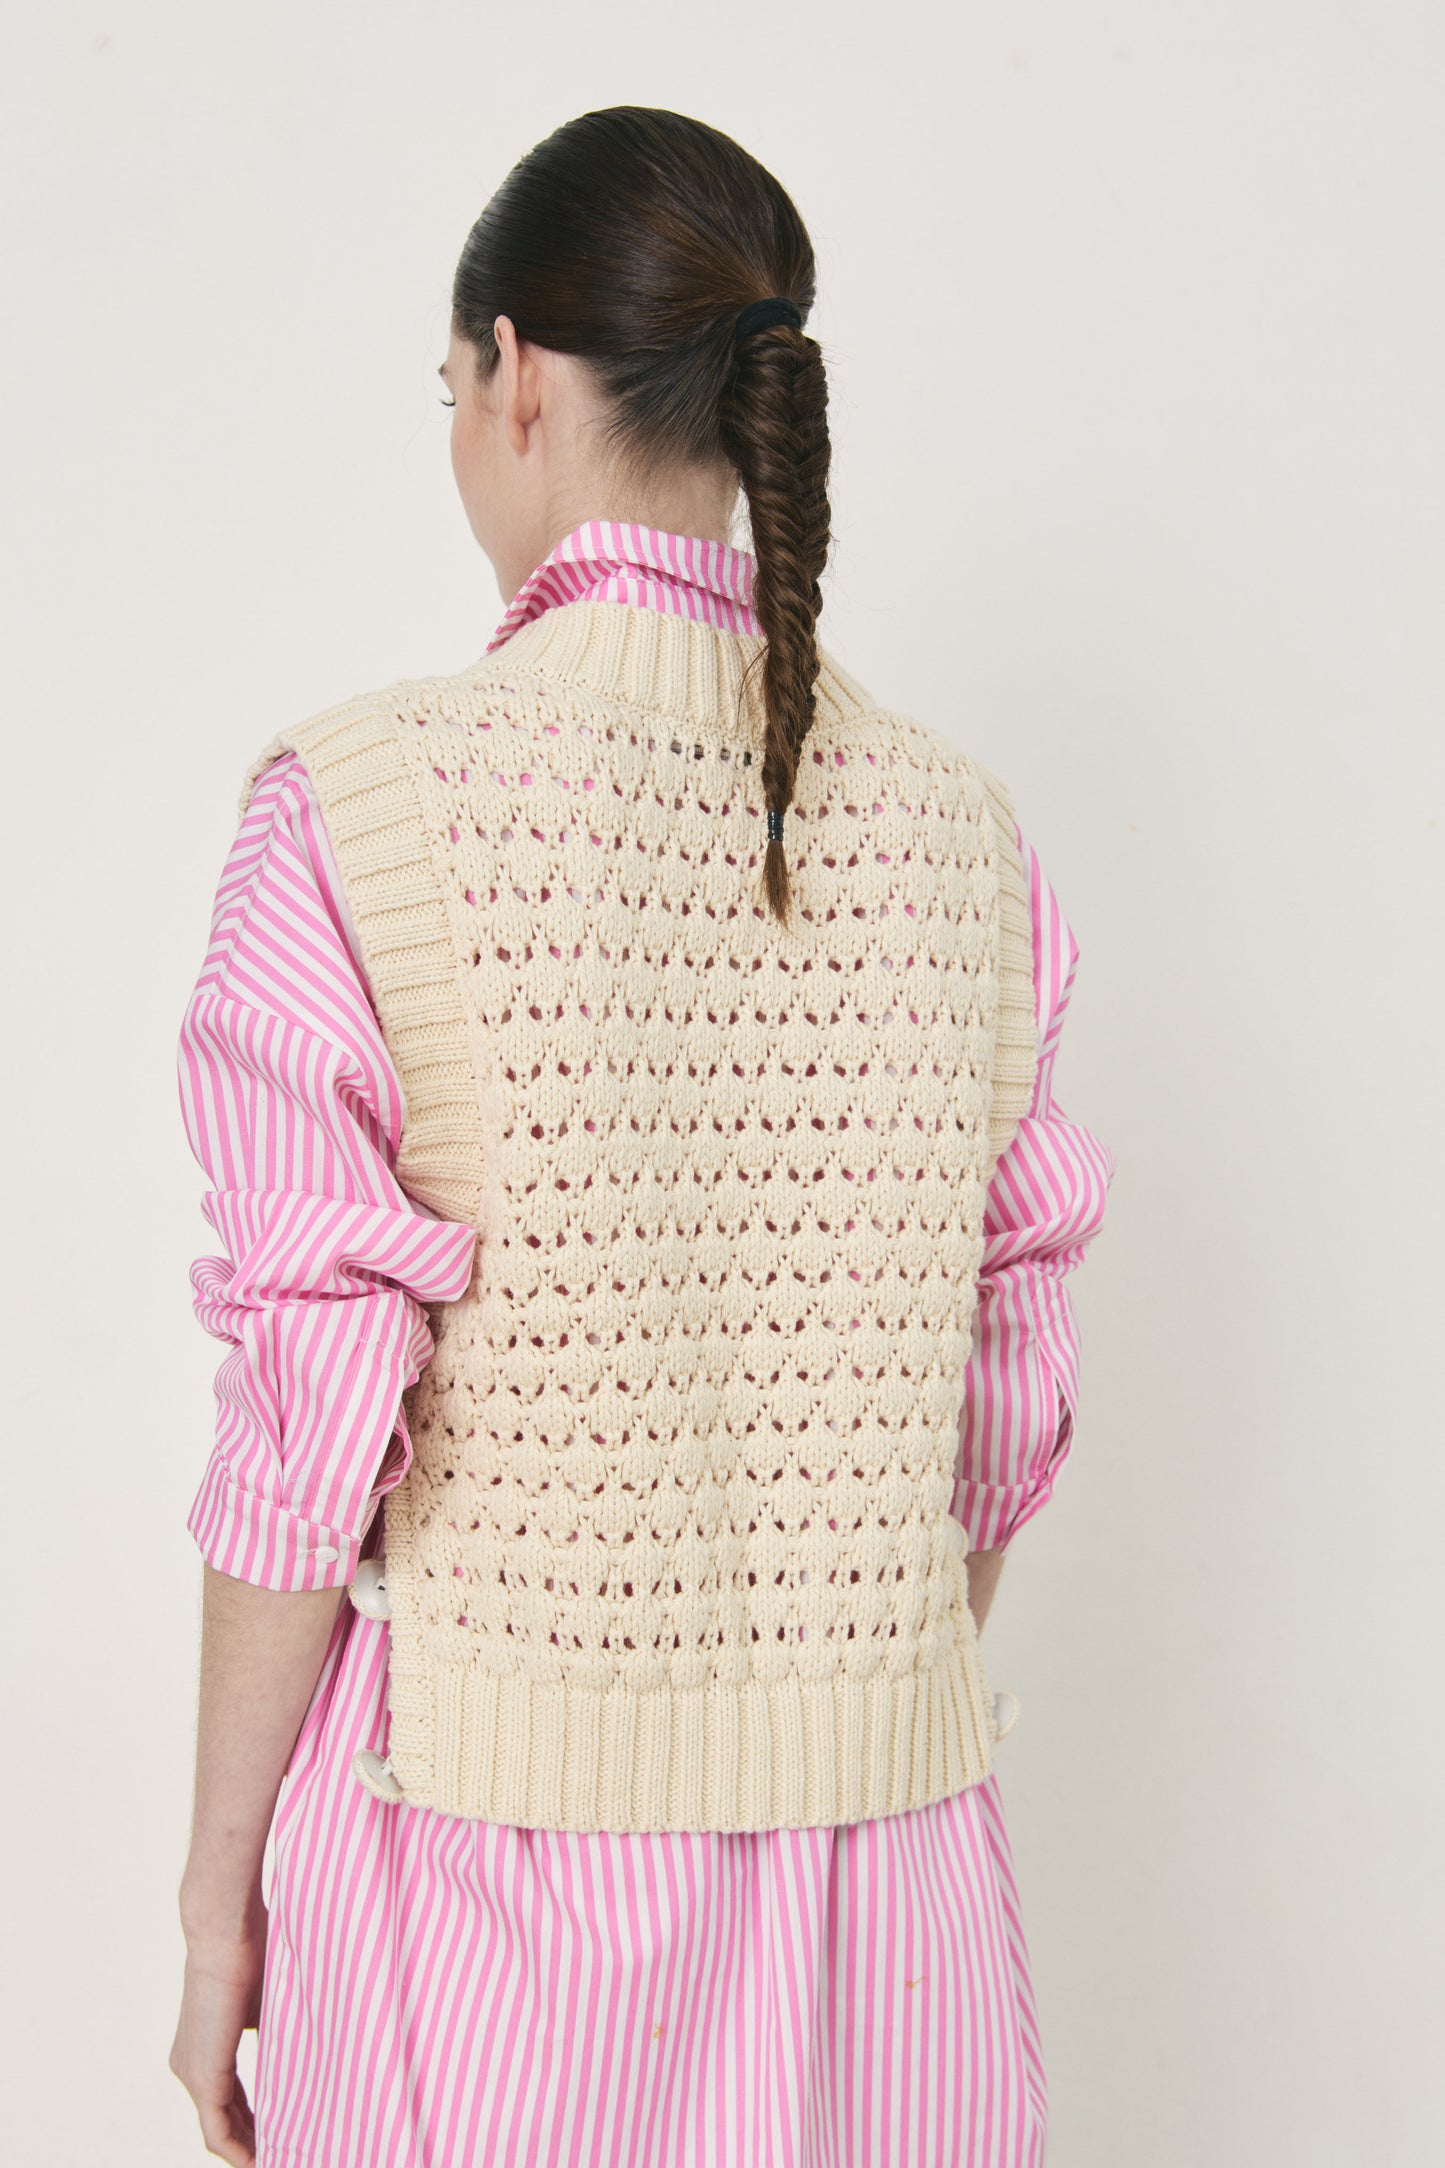 DÈLUC - Beckmann Knitted Vest - Off White